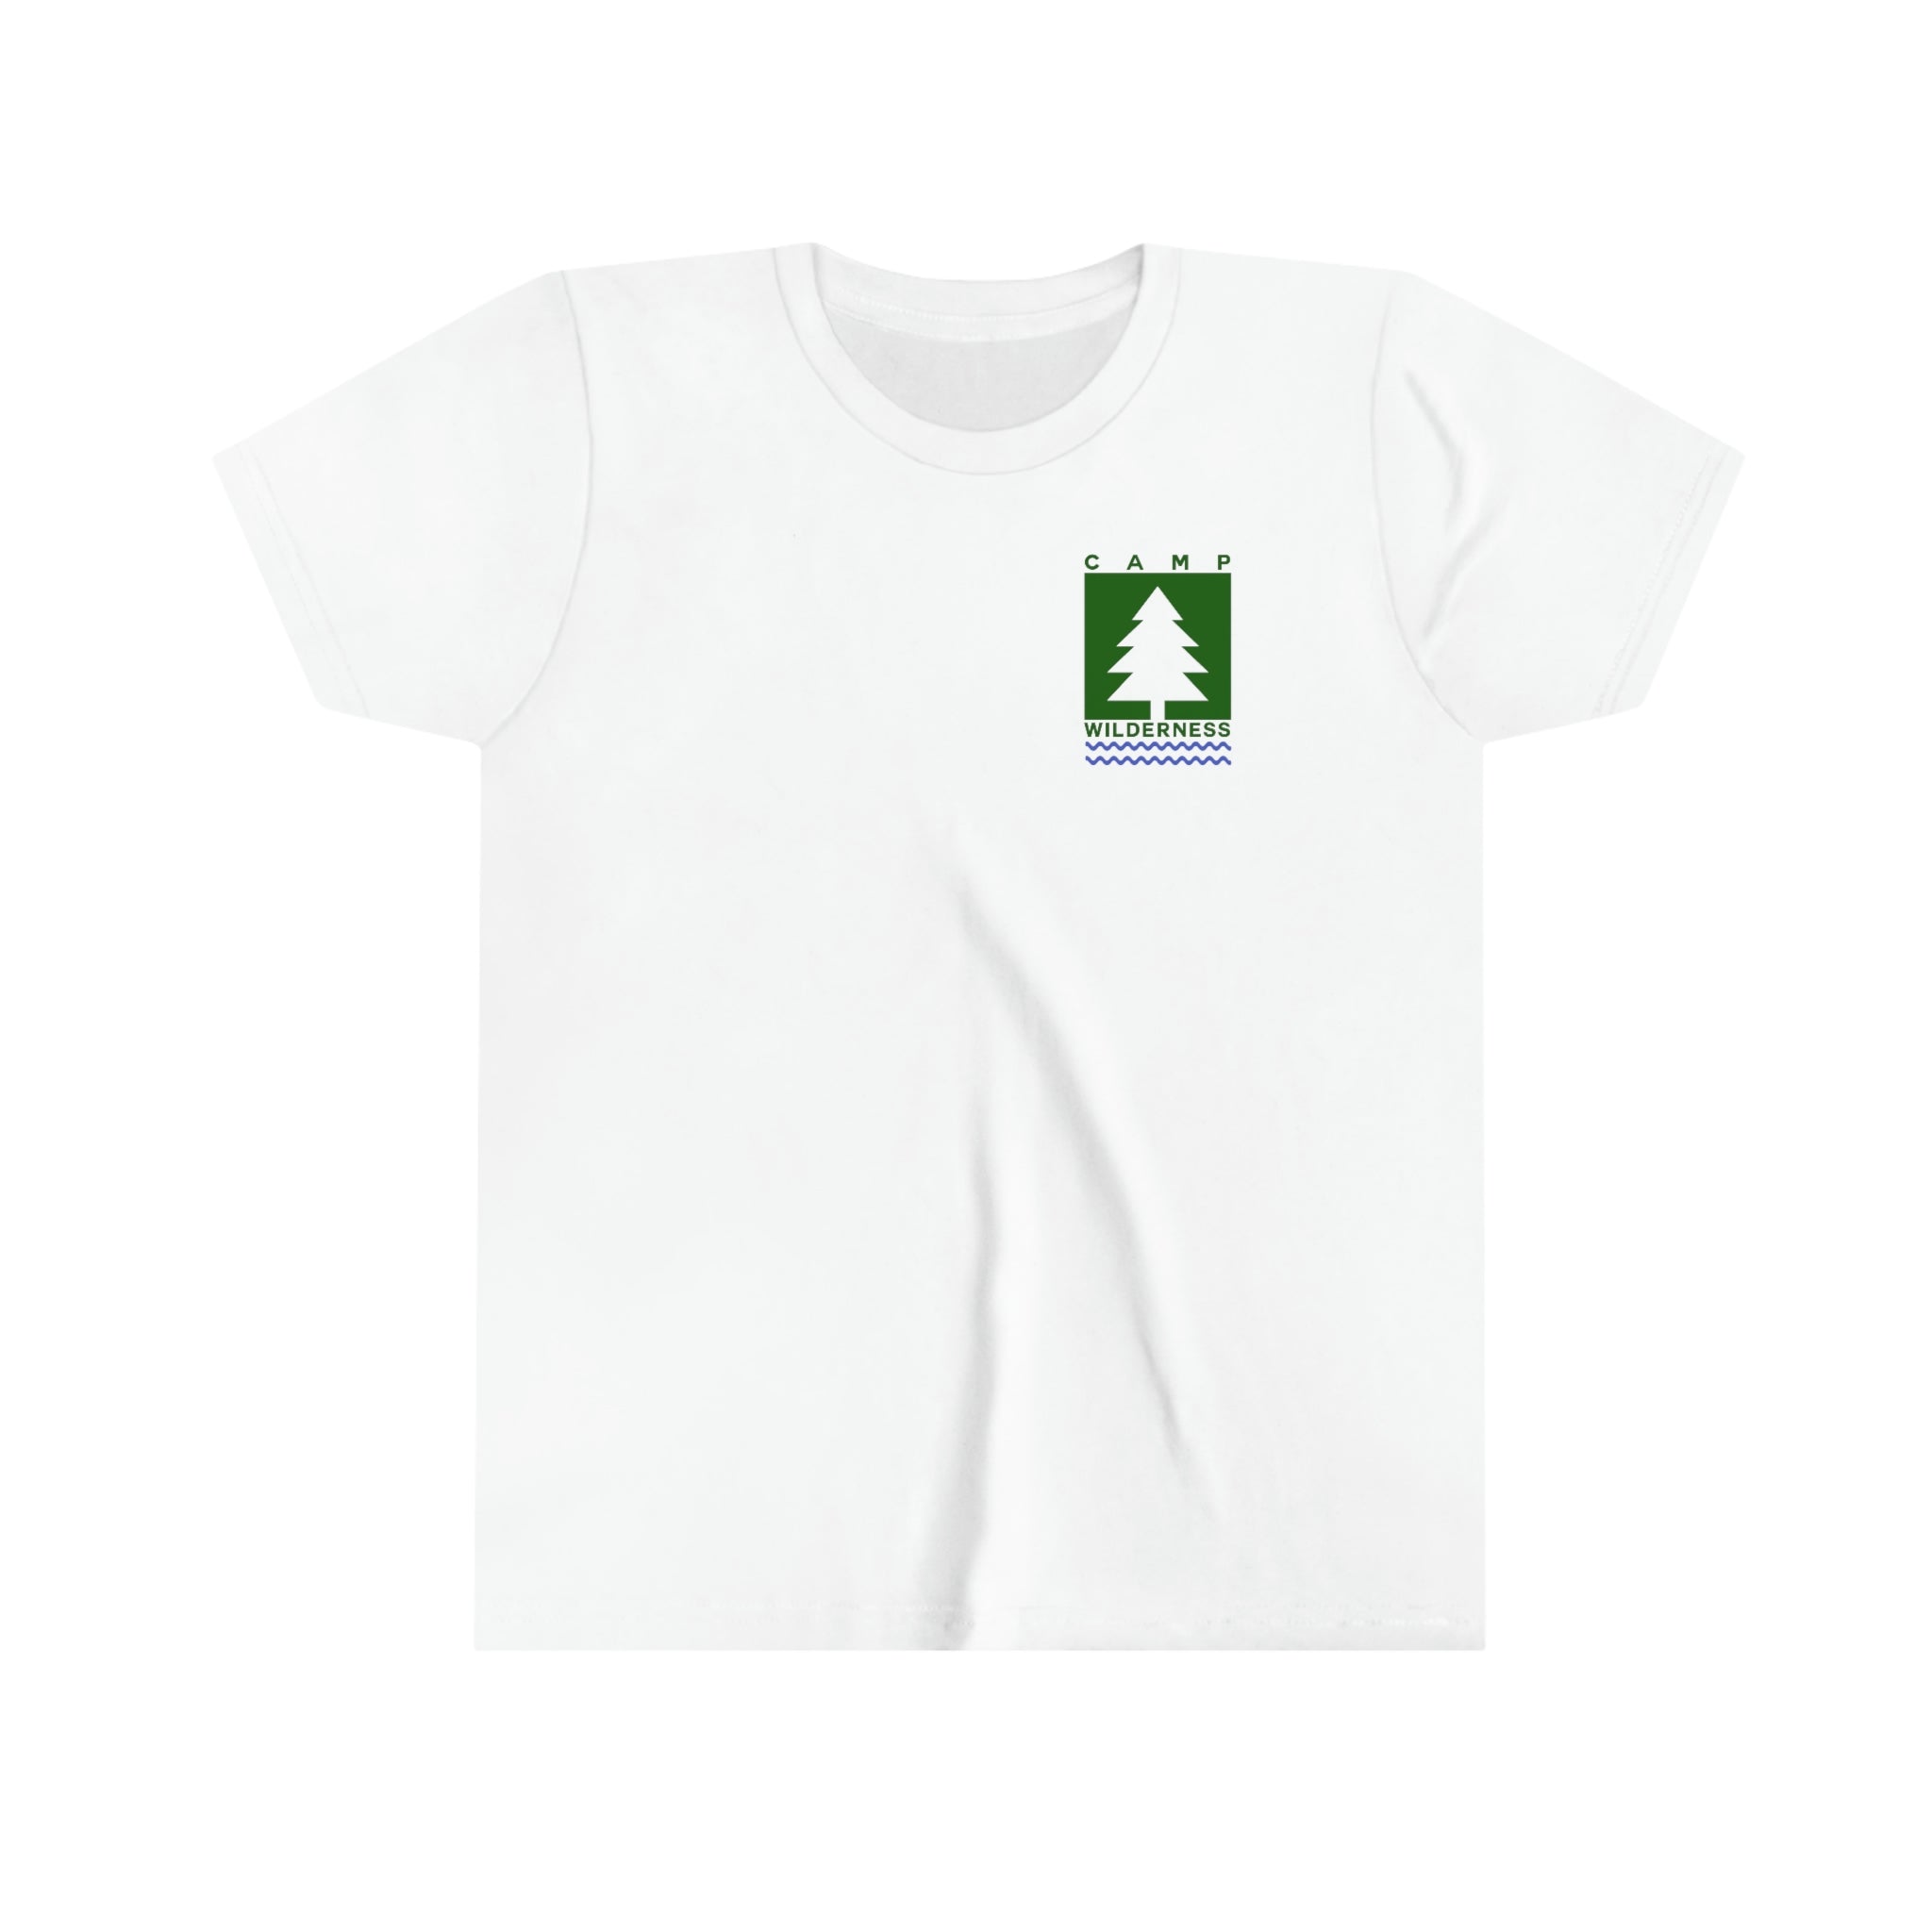 Camp Wilderness - Fort Wilderness - Kids Tshirt – DFB Store